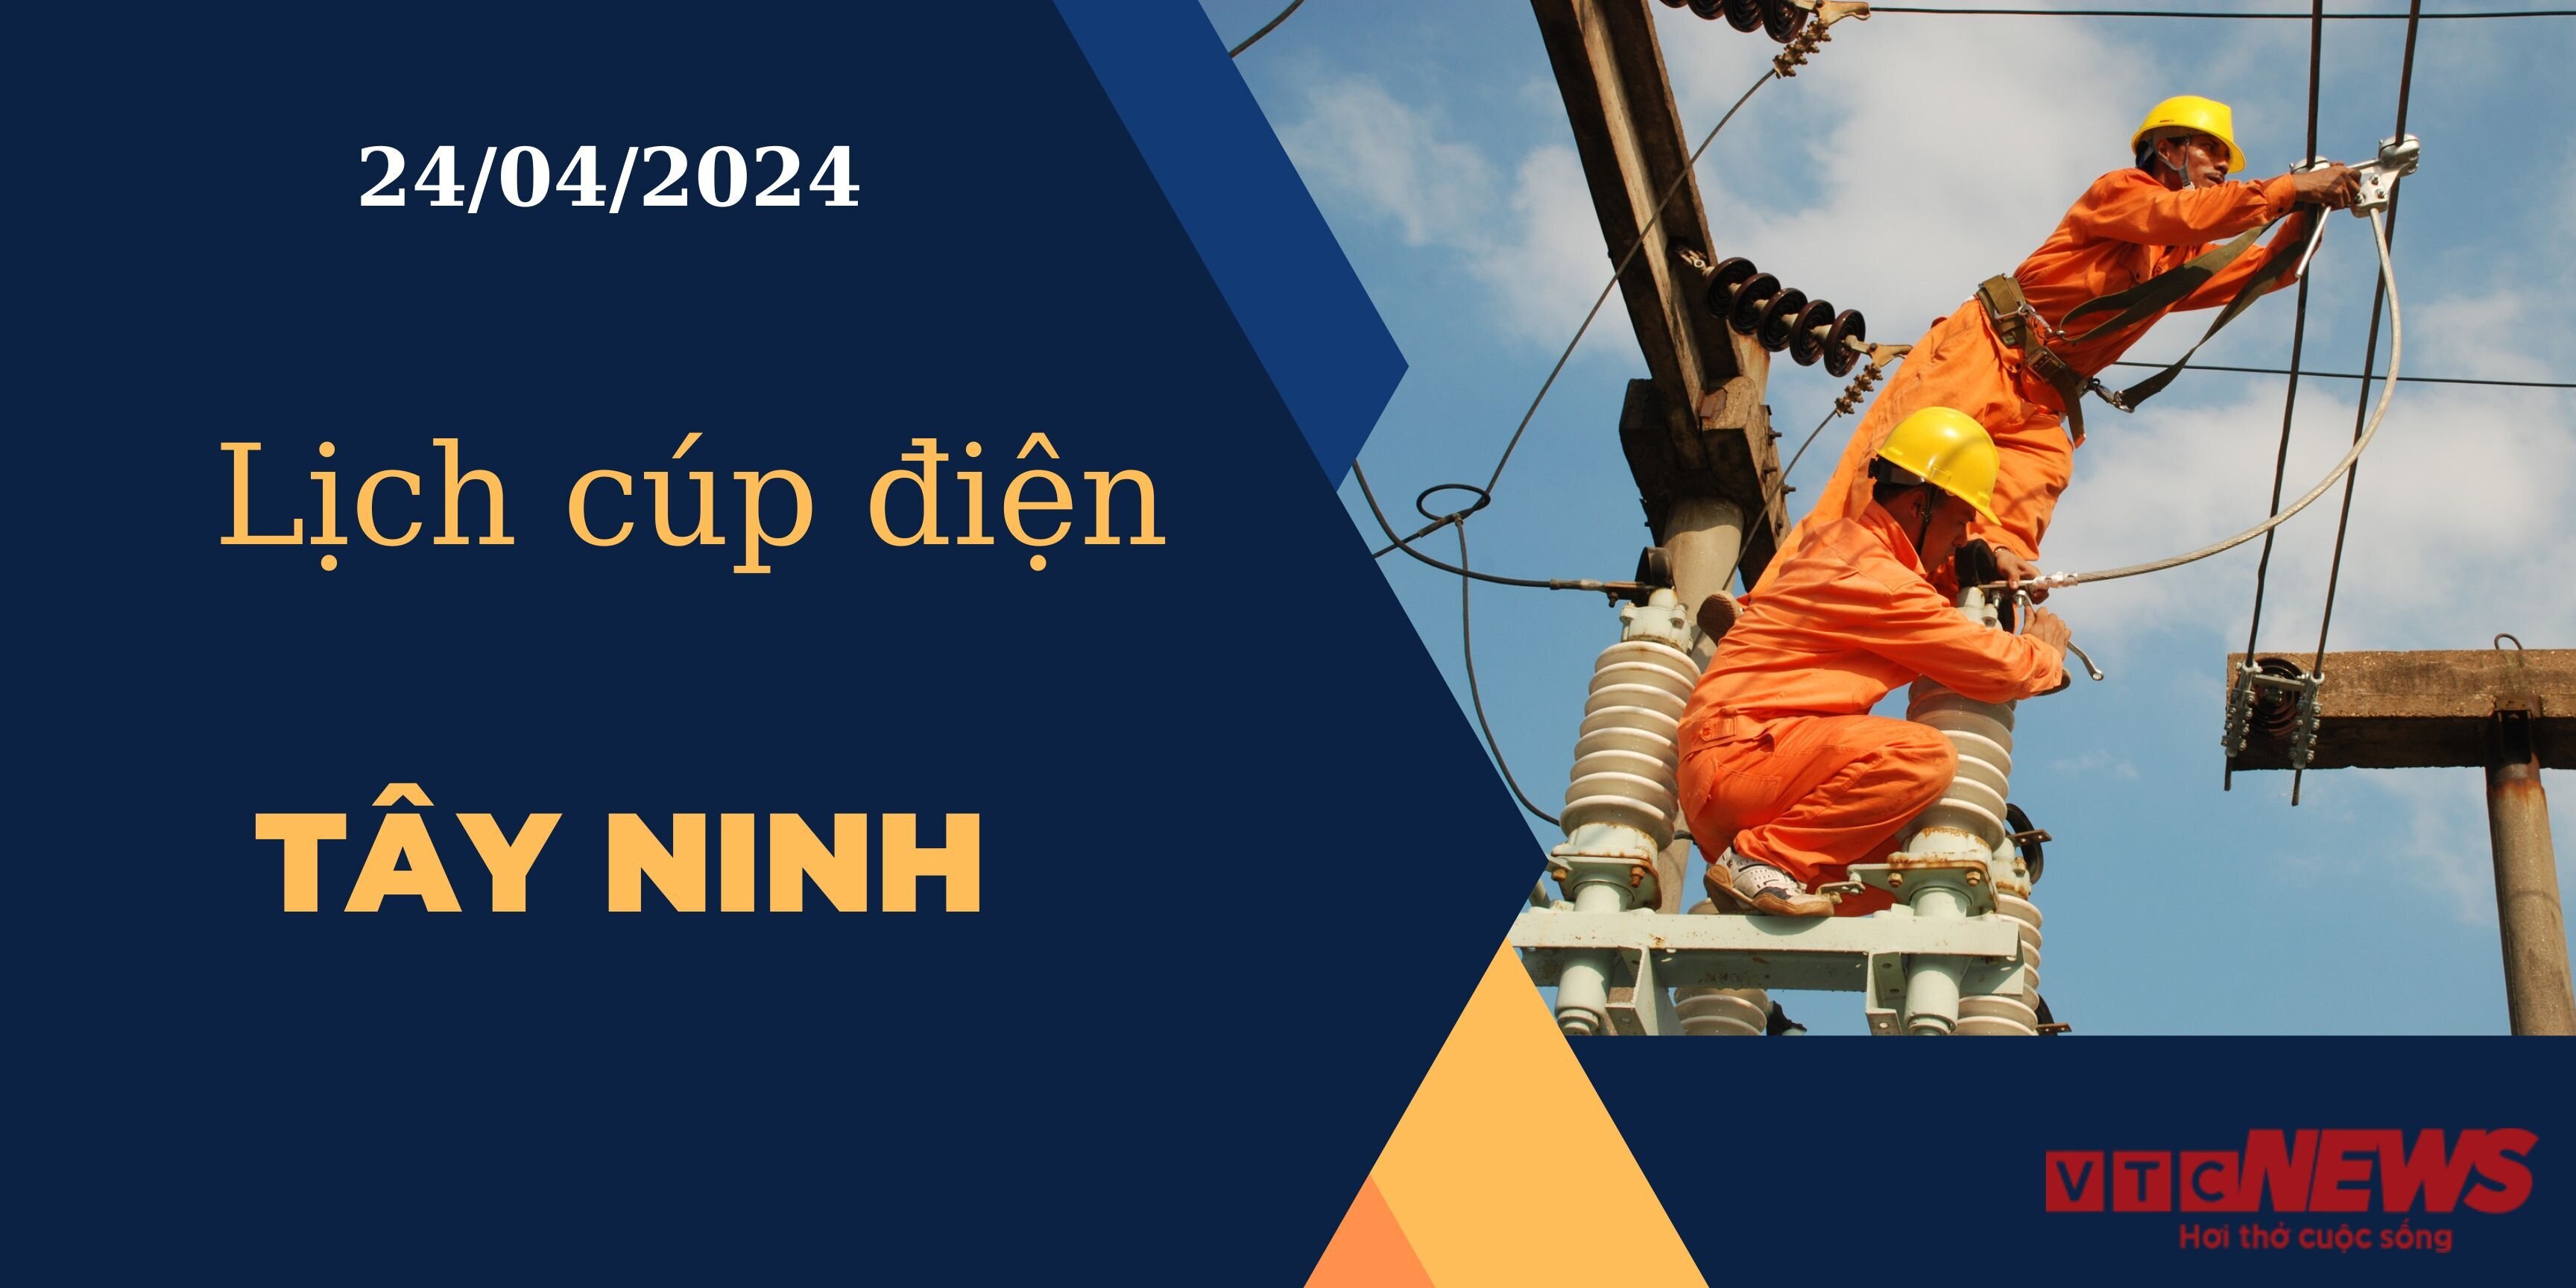 Lịch cúp điện hôm nay ngày 24/04/2024 tại Tây Ninh